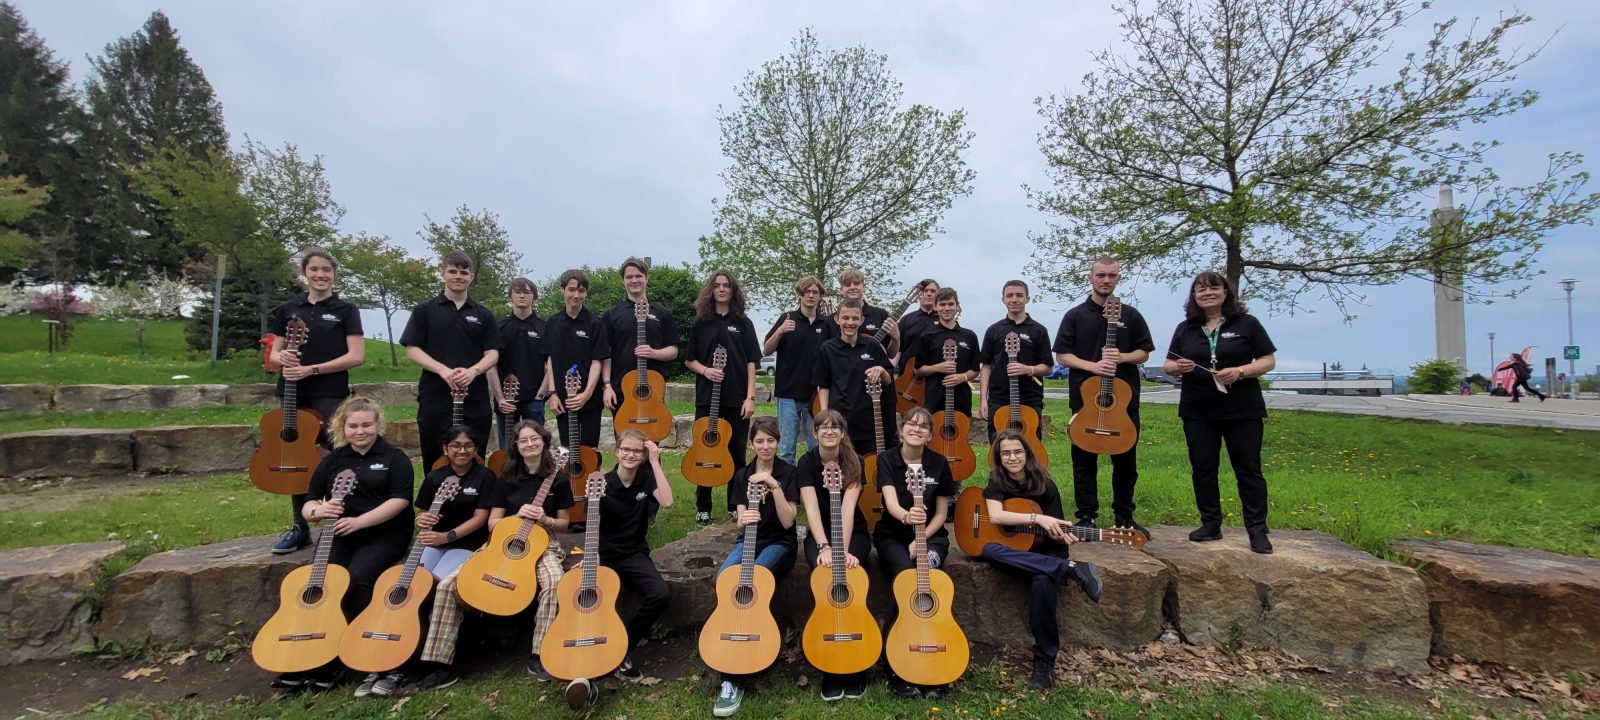 Félicitations aux 21 élèves du profil guitare de l’école secondaire du Grand-Coteau à Sainte-Julie